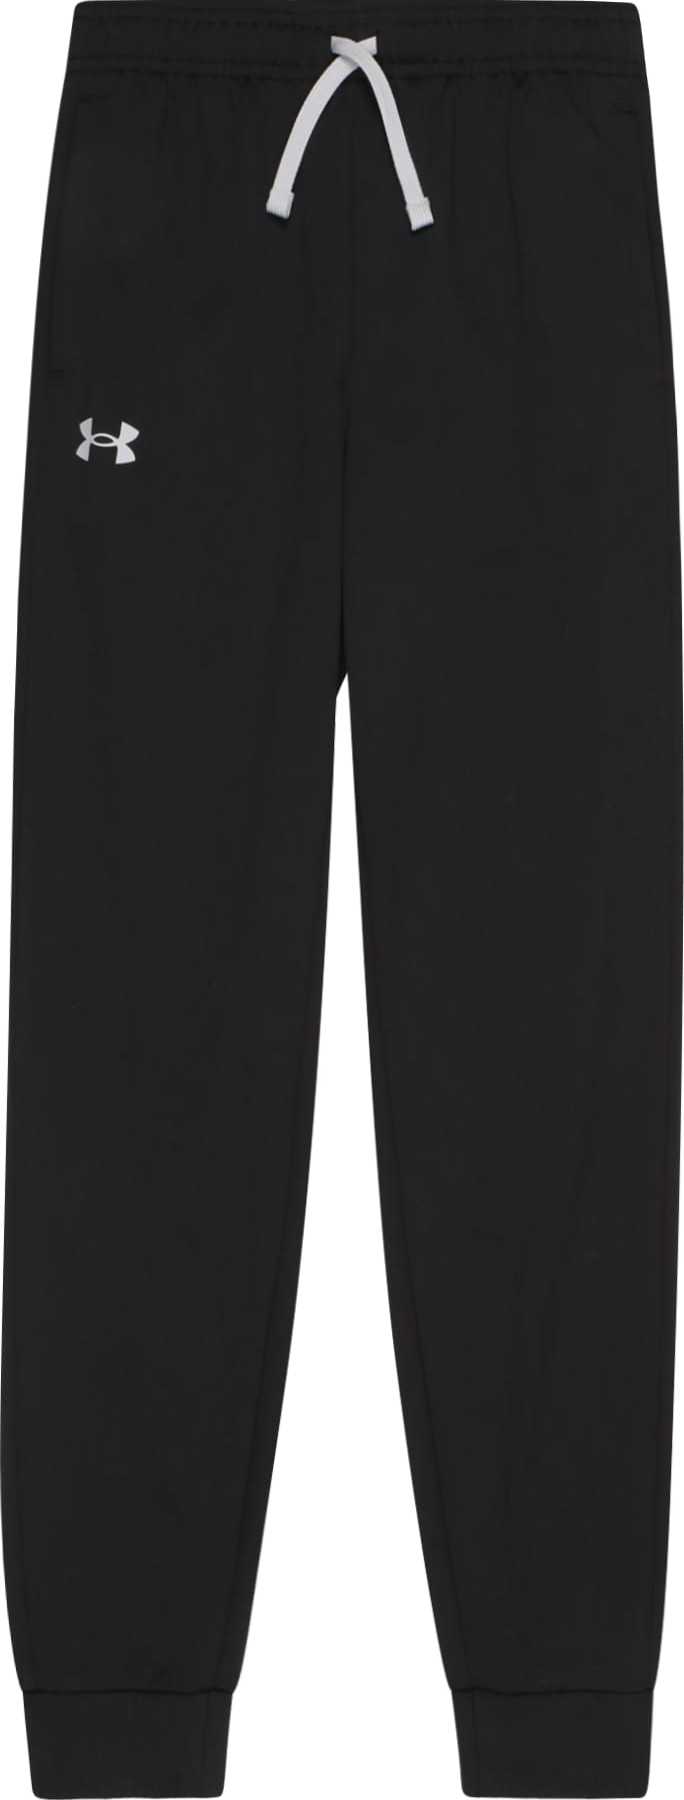 UNDER ARMOUR Sportovní kalhoty 'BRAWLER 2.0' černá / bílá